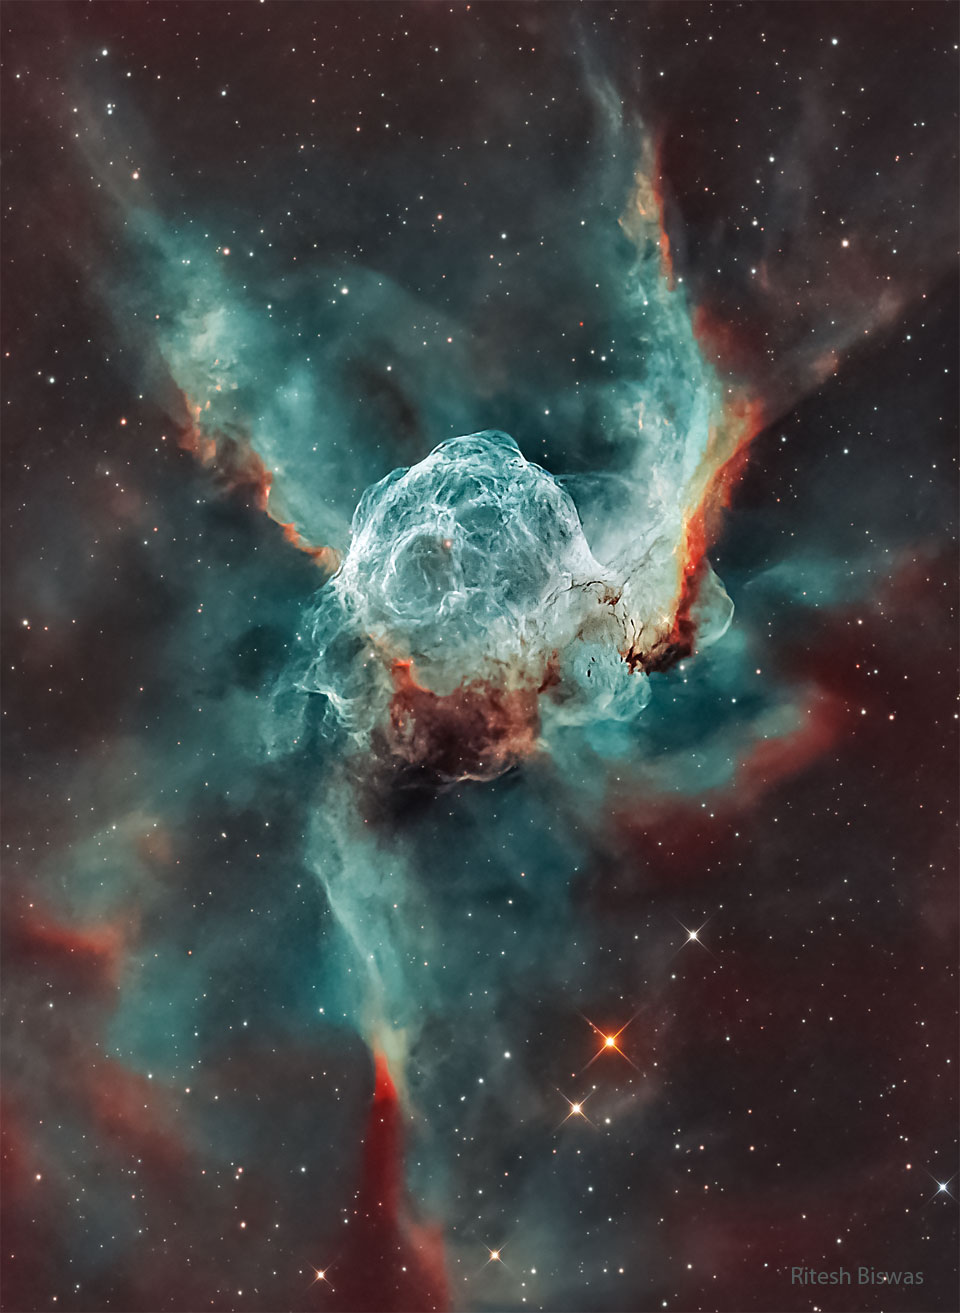 The image shows a starfield with an oval shaped
green-tinged nebula in the center. 
Więcej szczegółowych informacji w opisie poniżej.